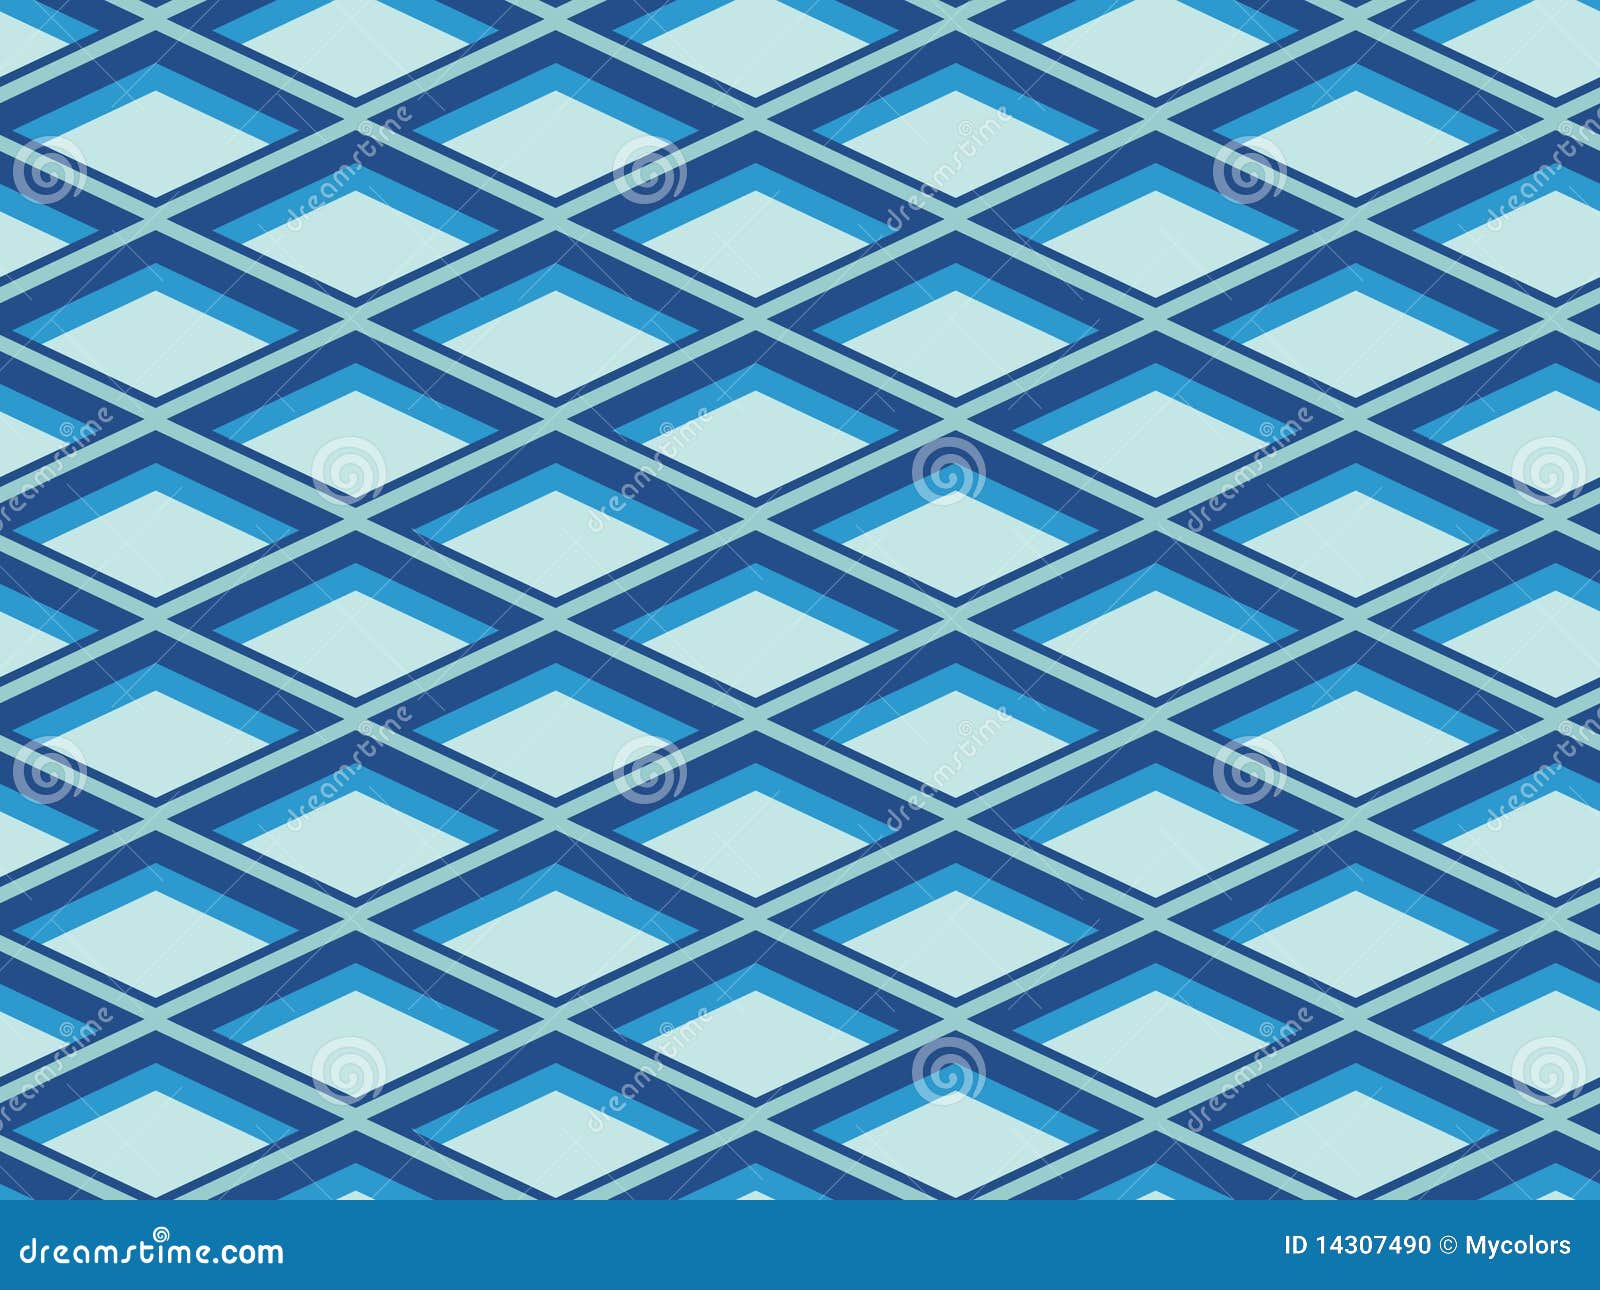  seamless geometrical pattern